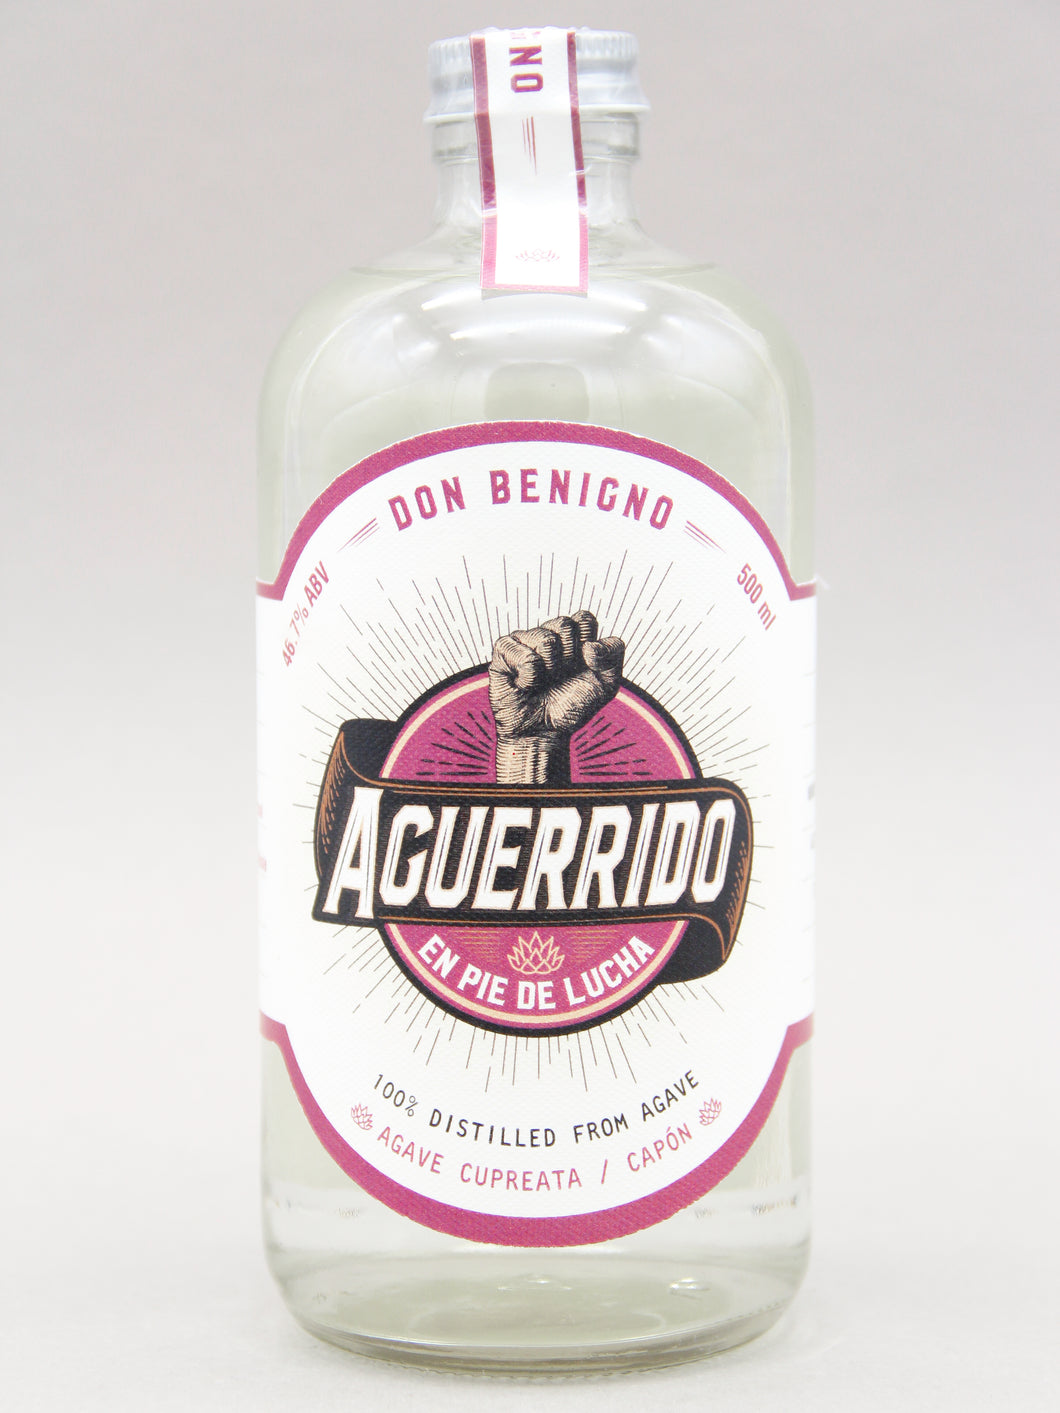 Aguerrido, Don Benigno, 100% Destilado de Agave, Cupreata / Capón (46.7%, 50cl)